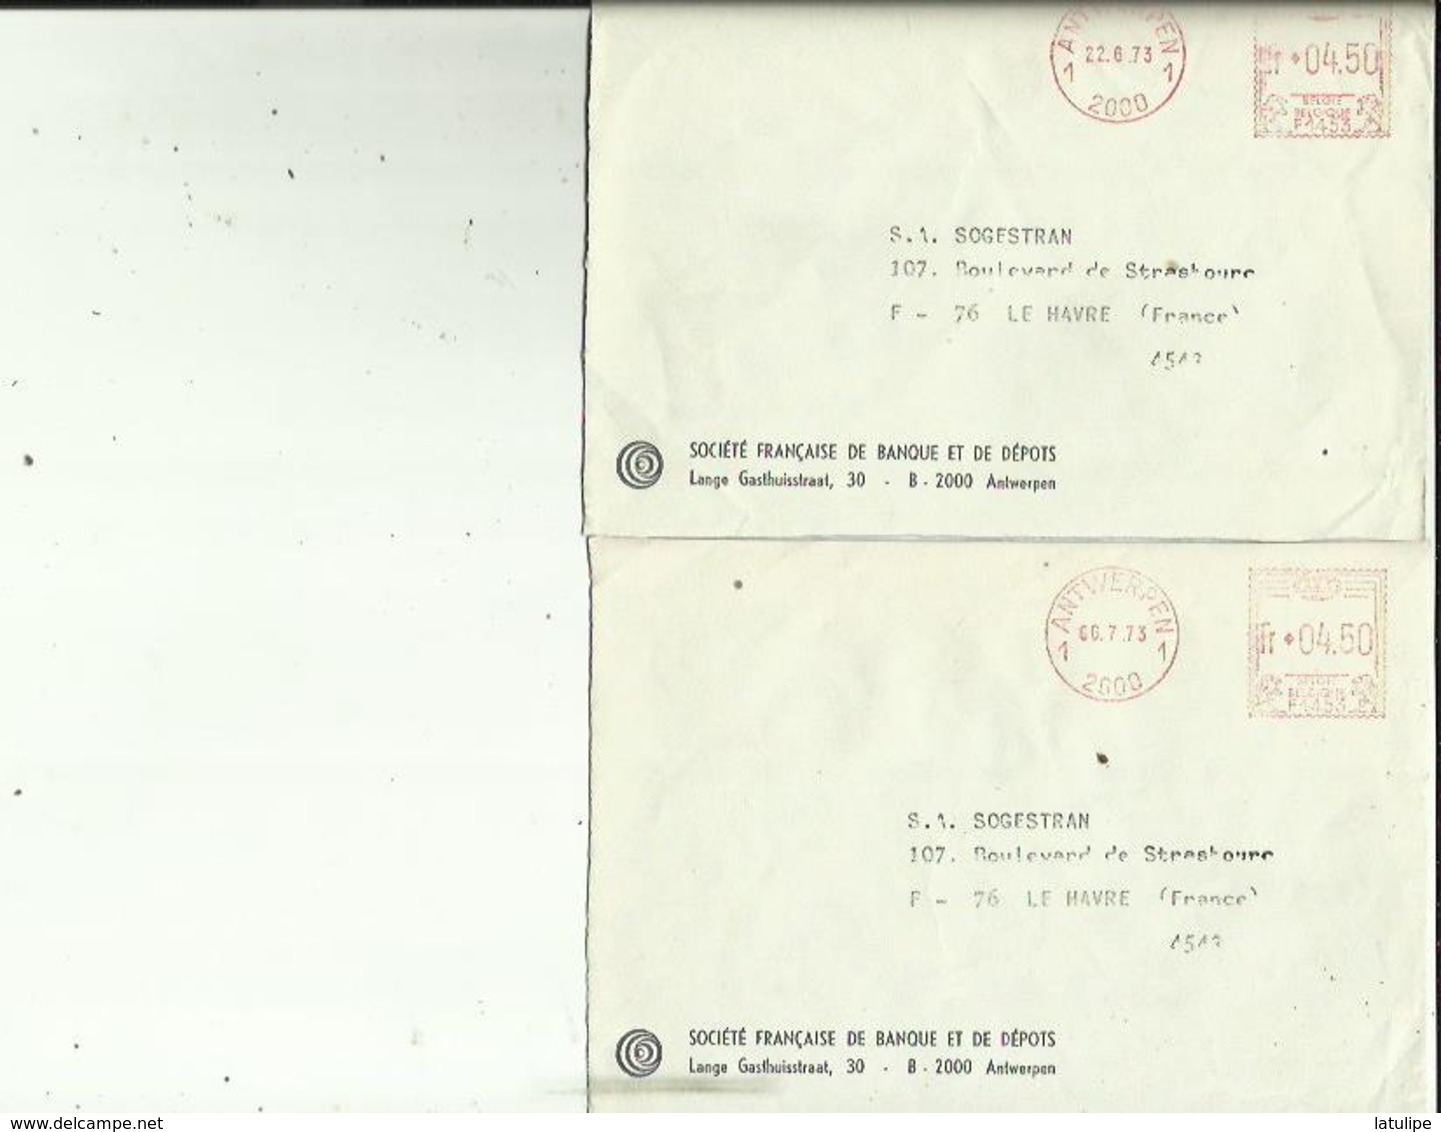 2  Enveloppes De Sté  Française De Depot A ANVERS   Adressé A  S A  SOGESTRAM Au HAVRE 76 Le 22-6 Et 6-7 73 - Bank & Insurance